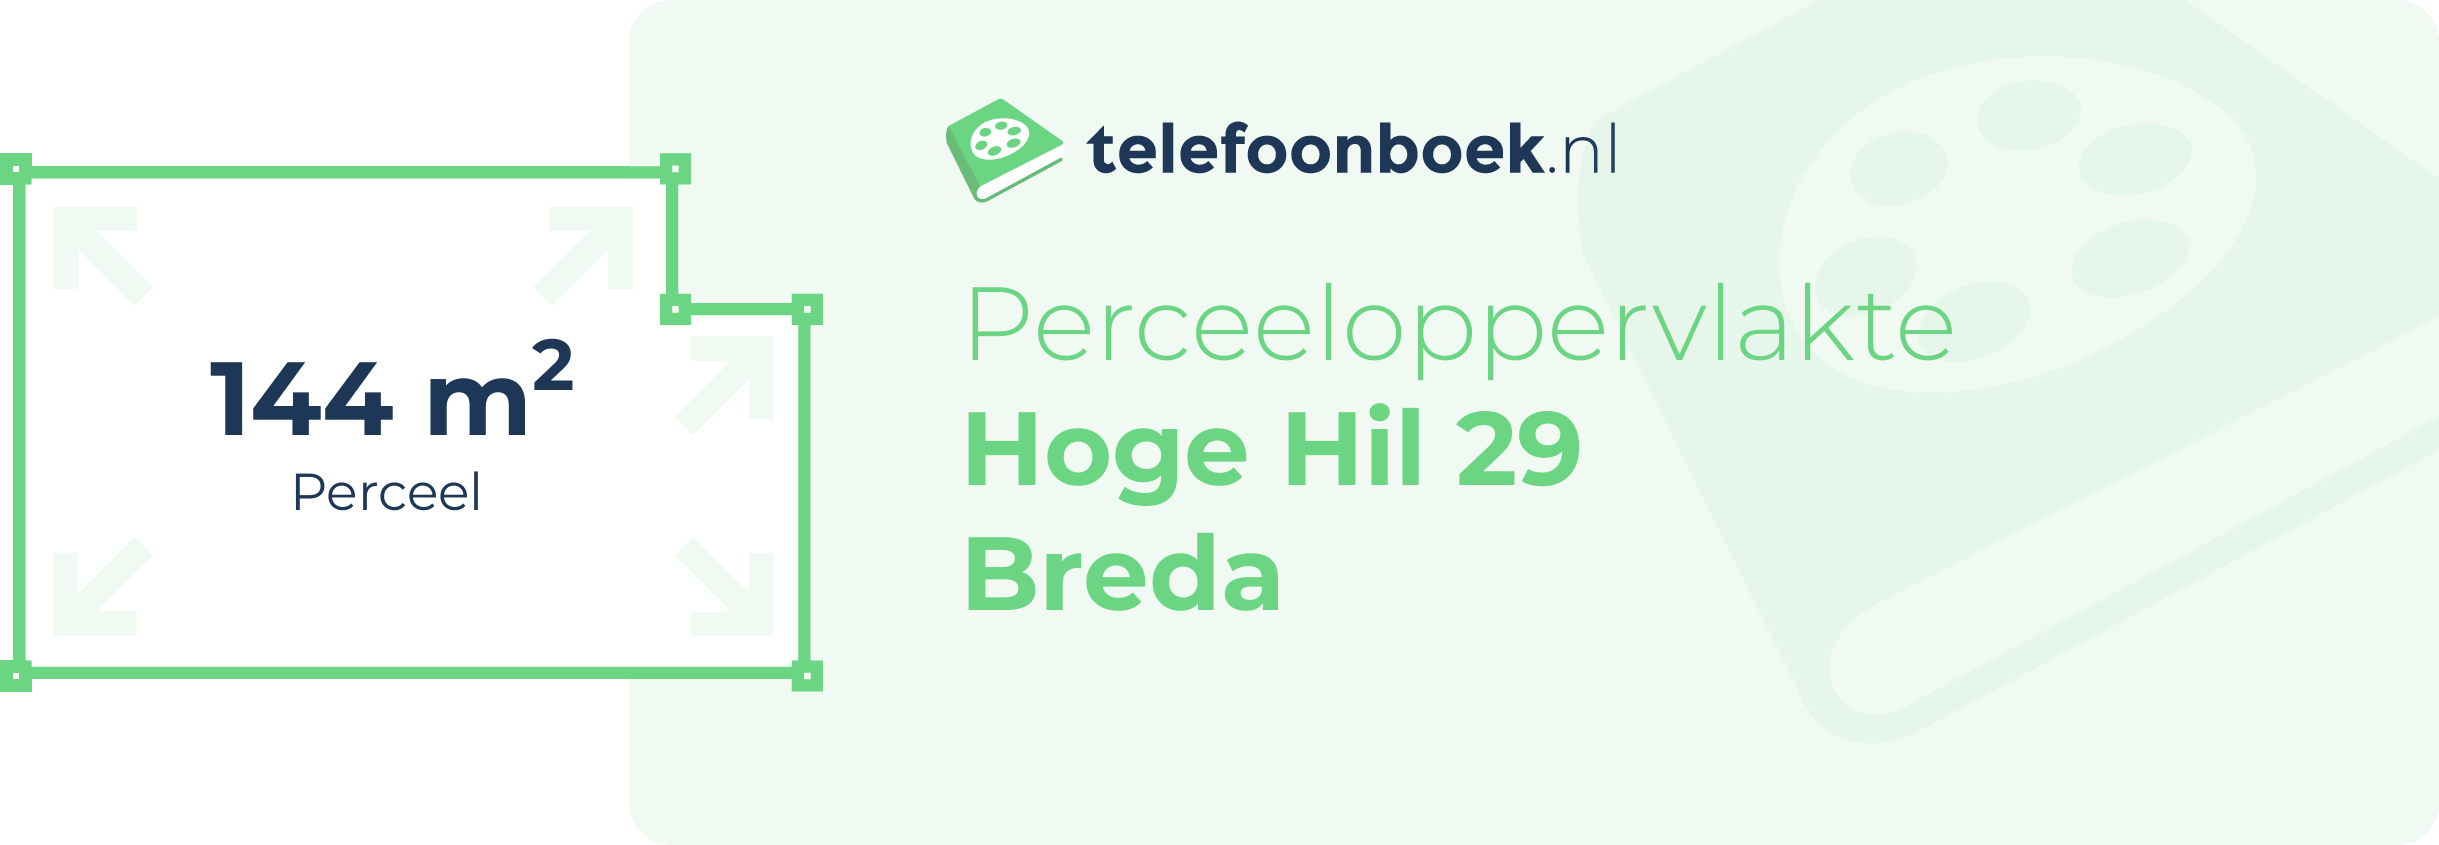 Perceeloppervlakte Hoge Hil 29 Breda